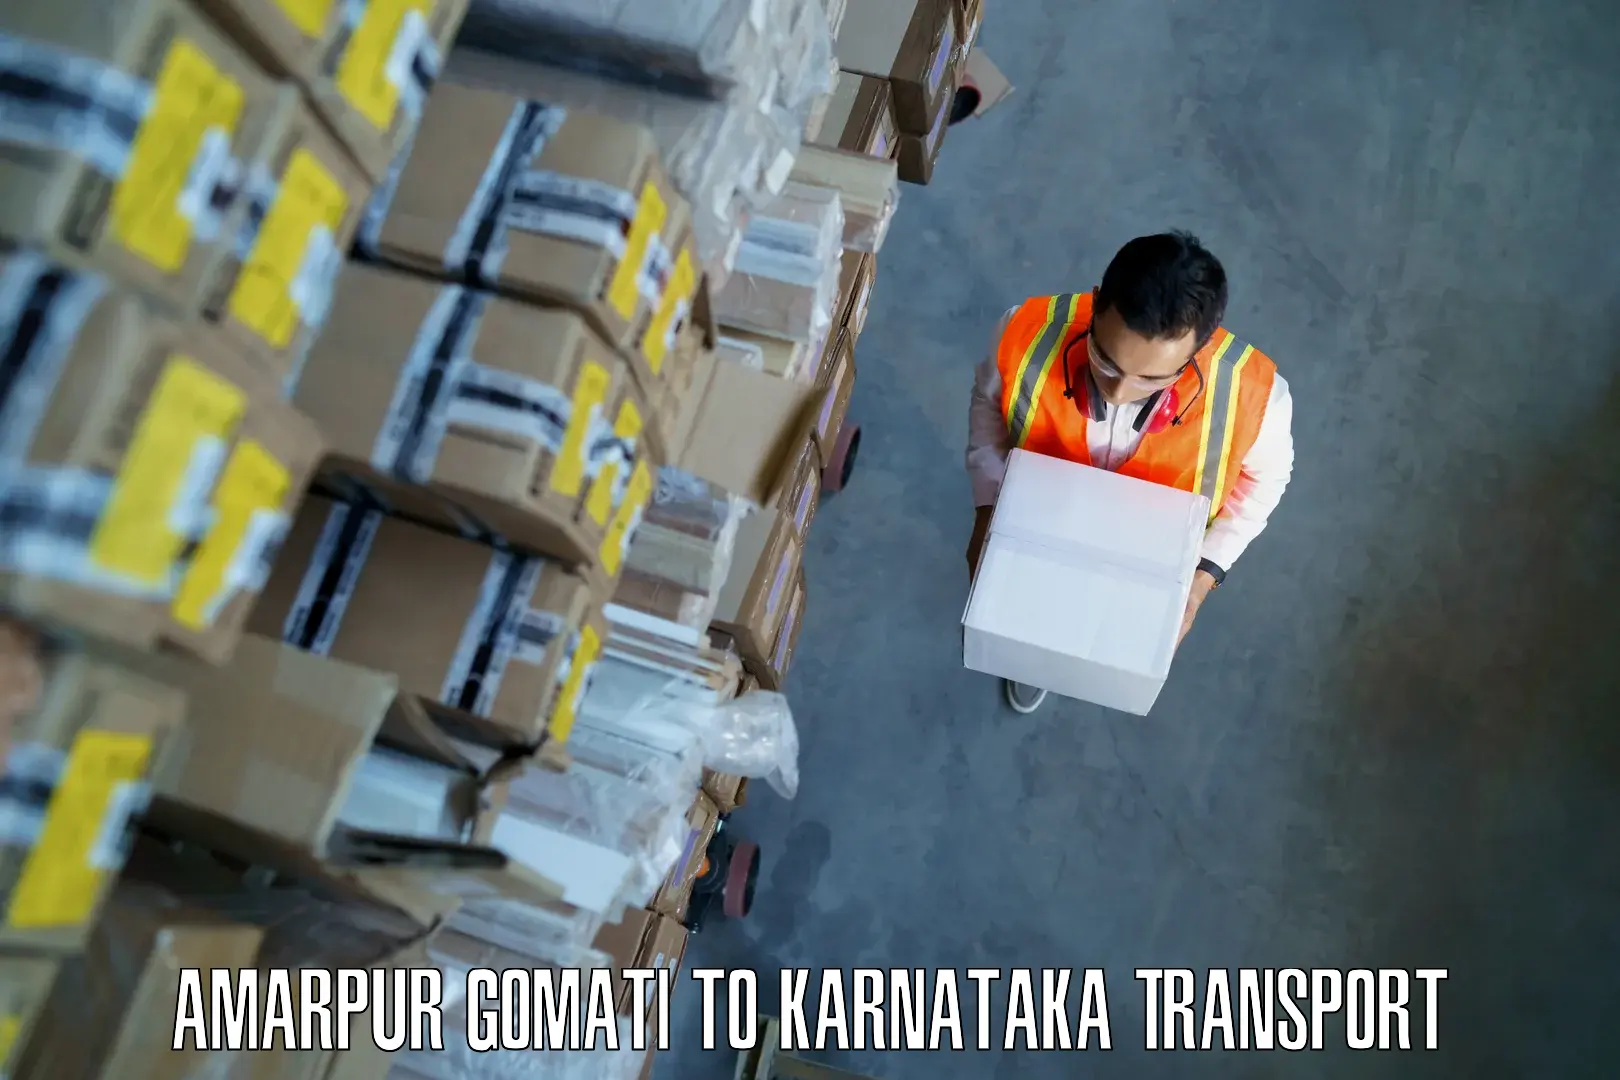 Parcel transport services Amarpur Gomati to Hunsur